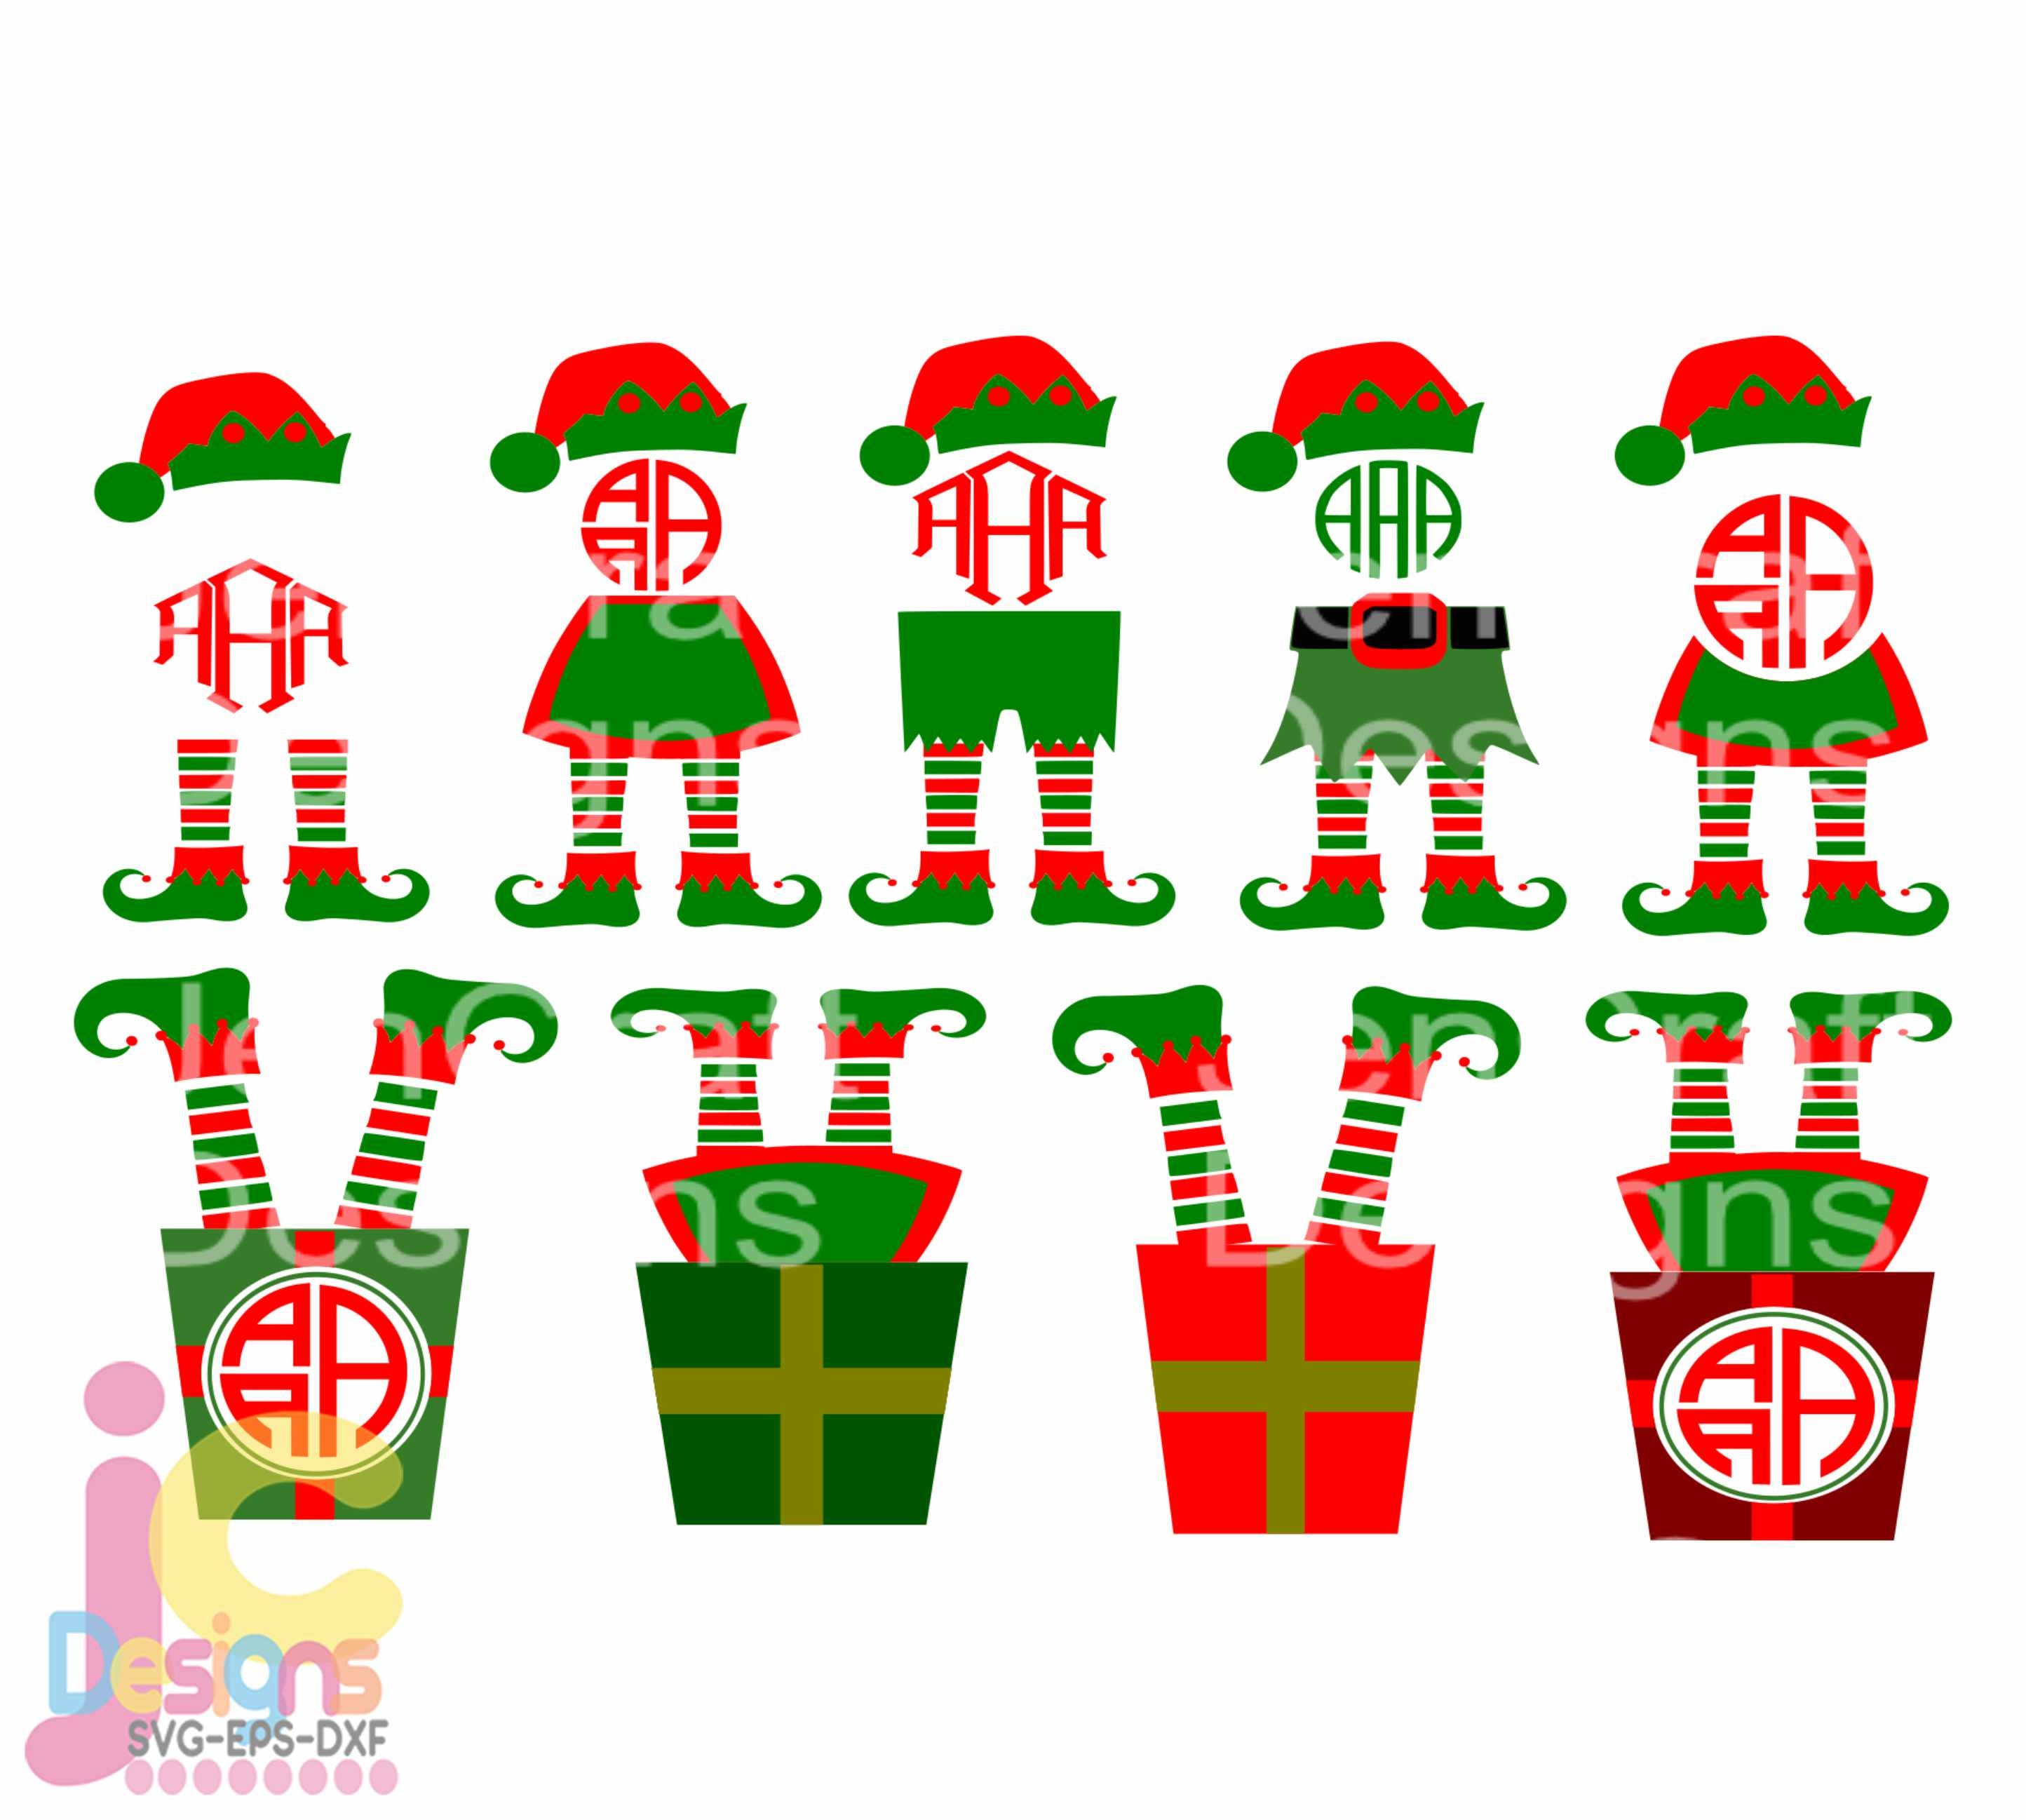 Download Christmas Elf Legs SVG Monogram Frame Design Digital Clipart Cut File Png SVG Eps Dxf Instant ...